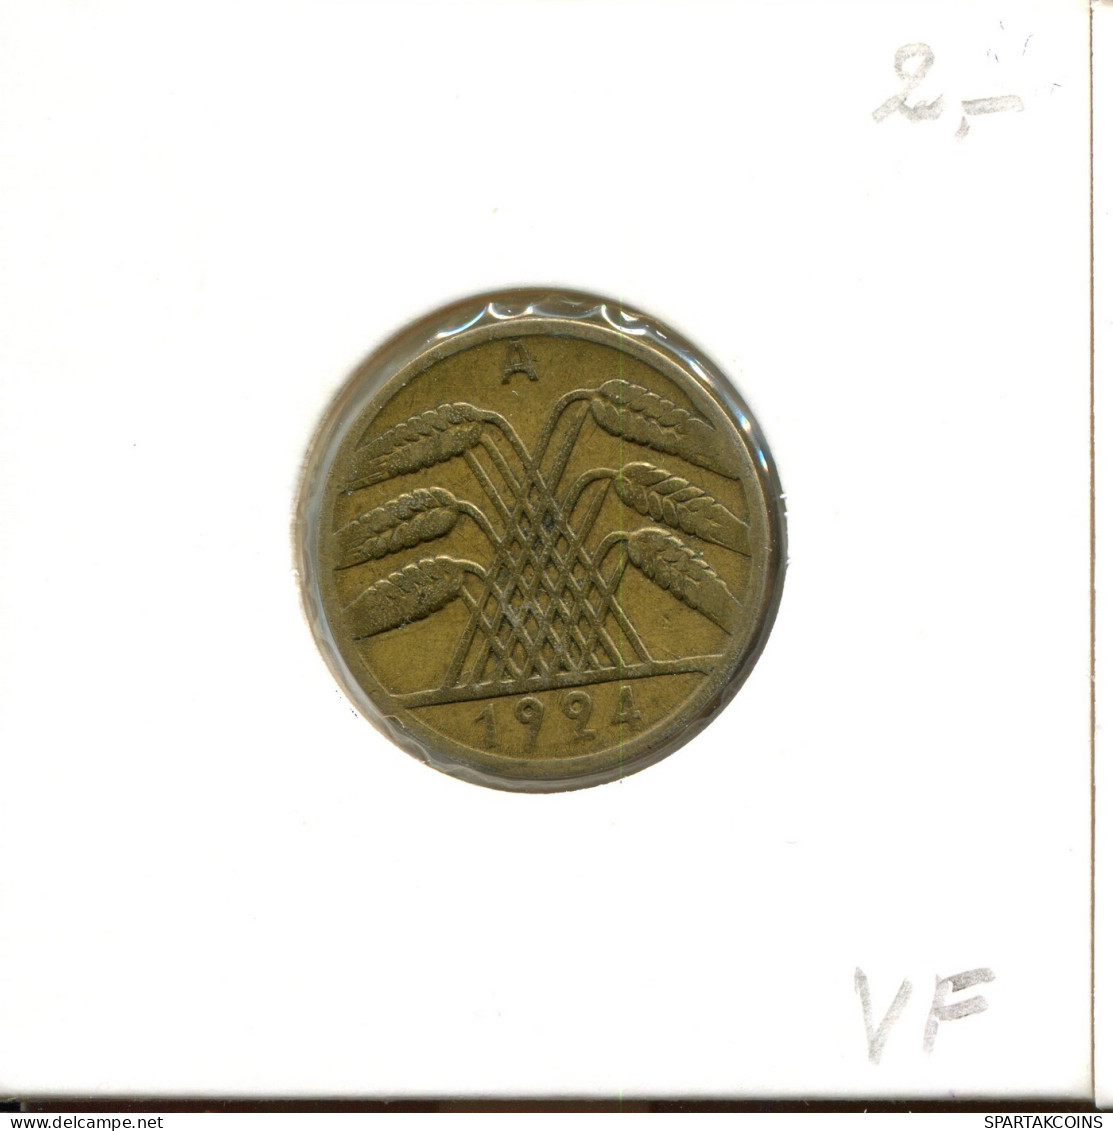 10 RENTENPFENNIG 1924 A GERMANY Coin #DA796.U.A - 10 Rentenpfennig & 10 Reichspfennig